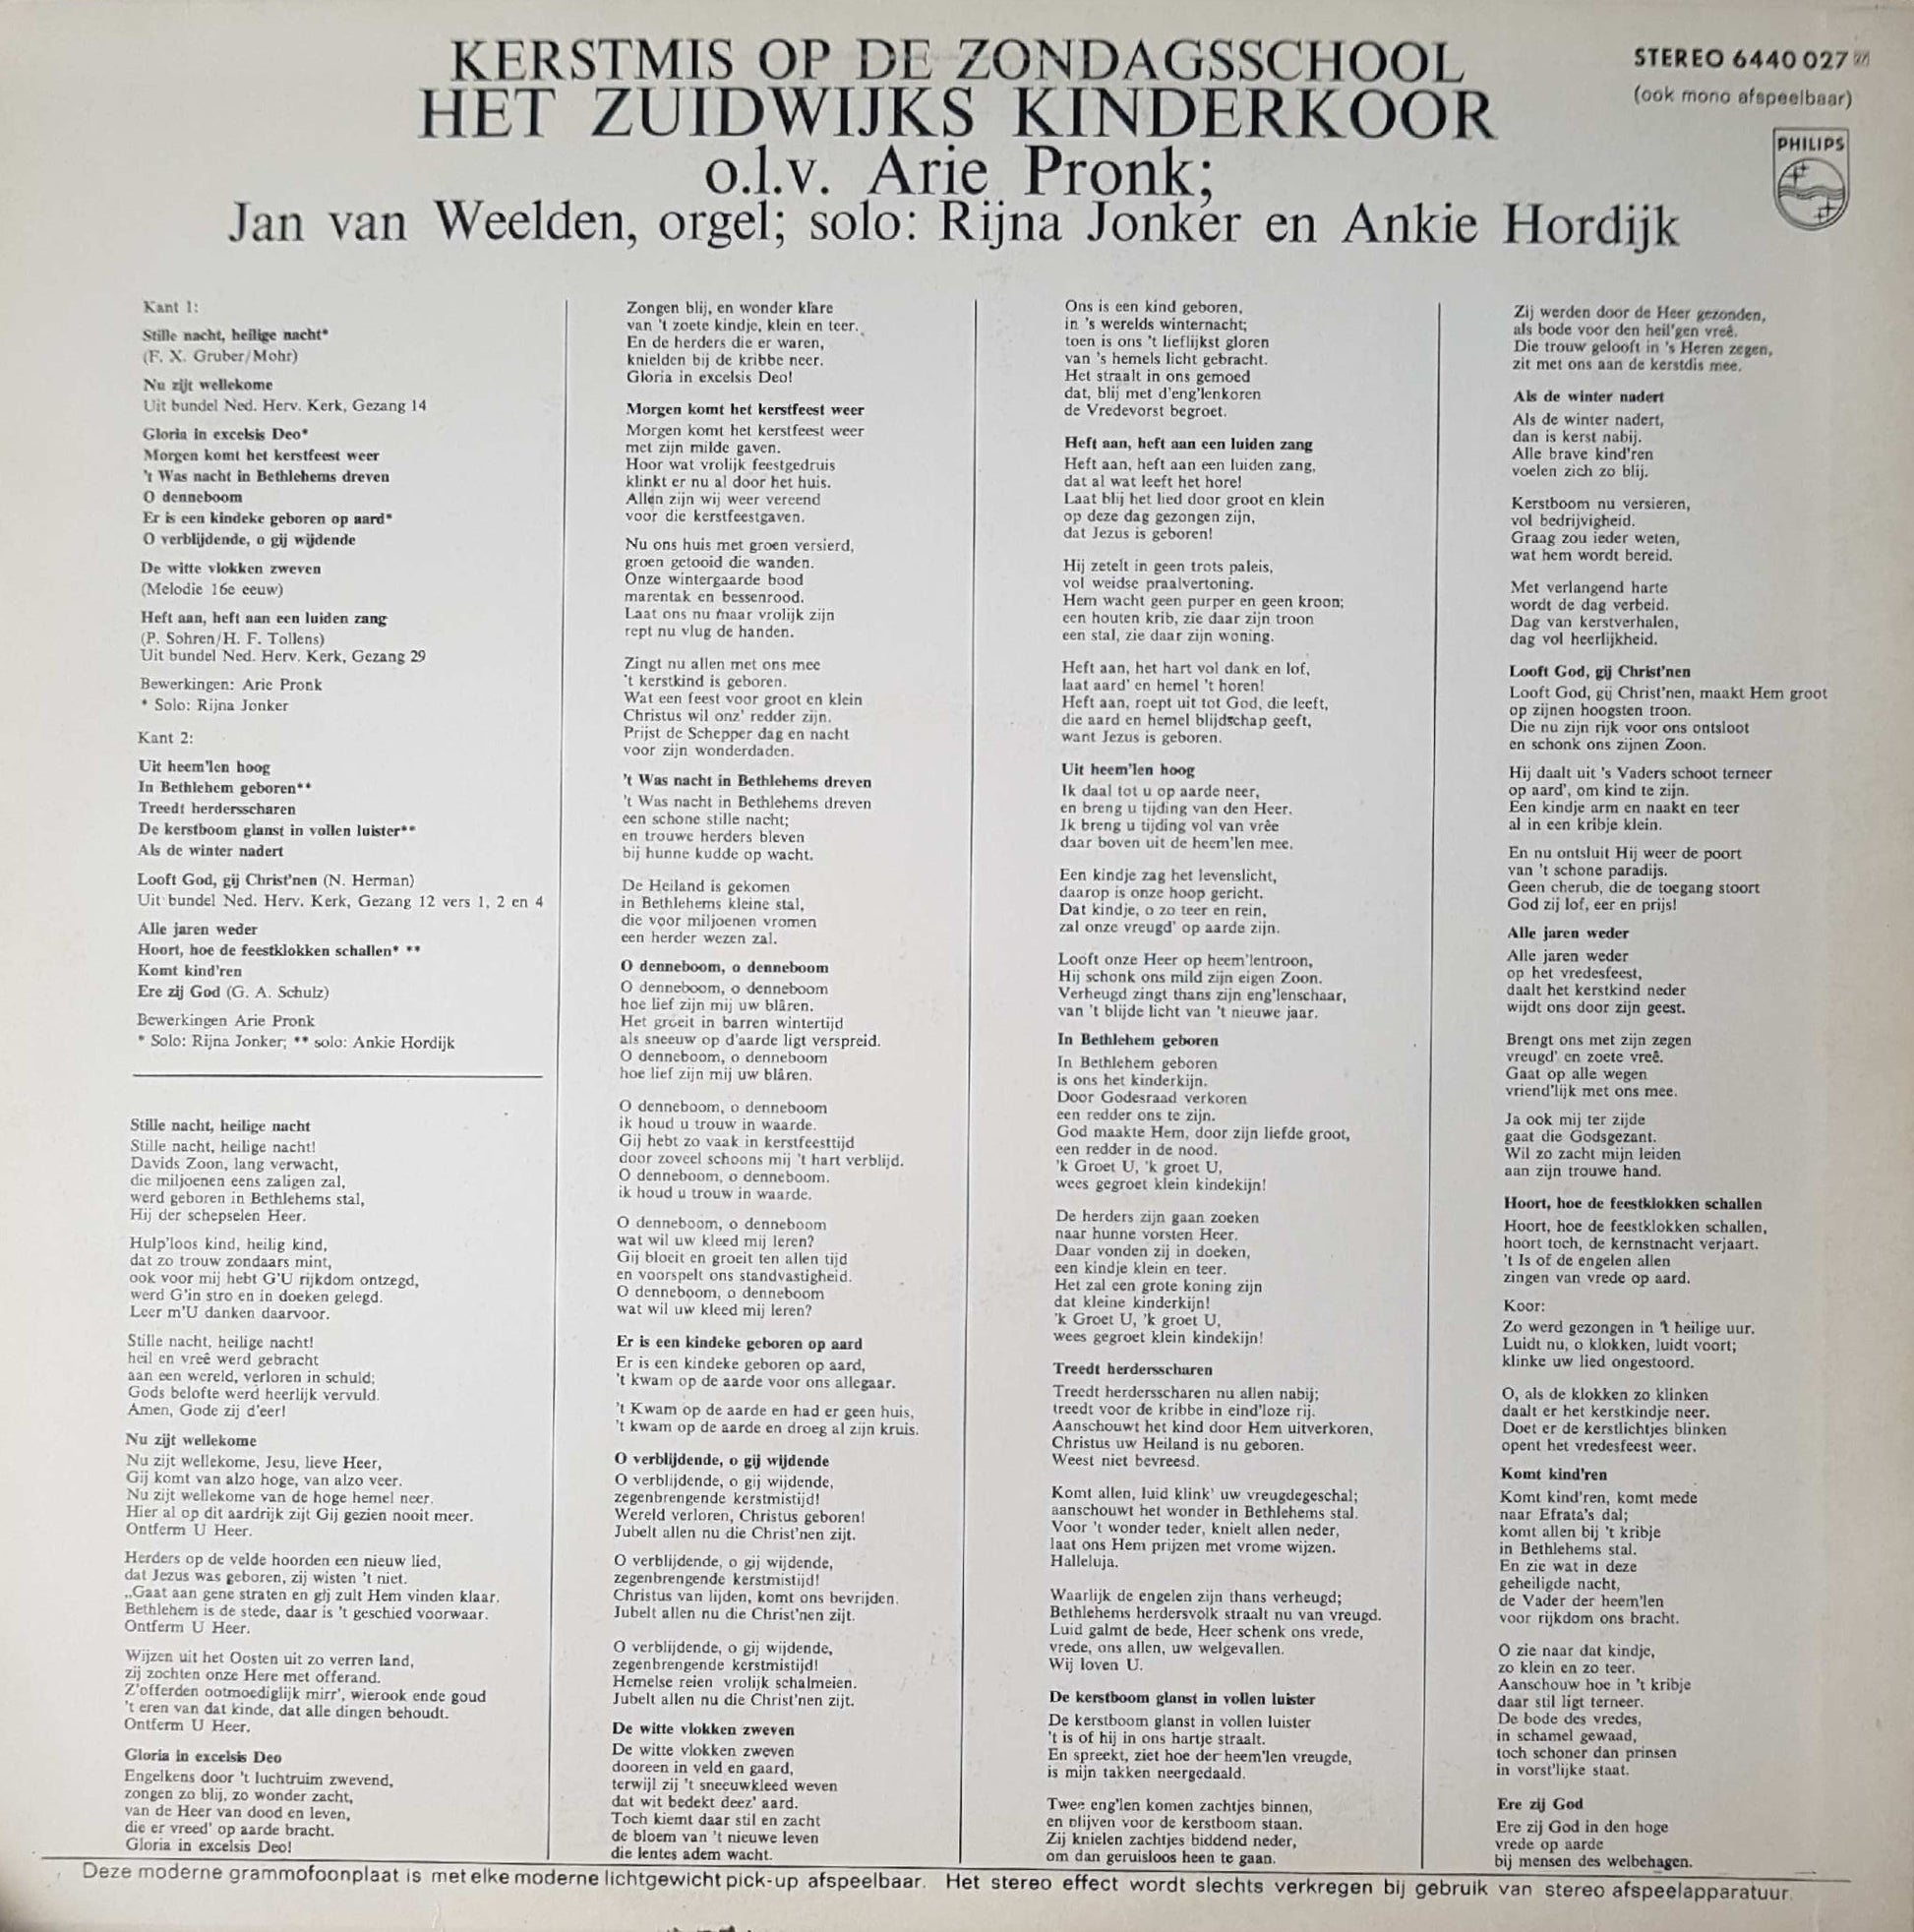 Zuidwijks Kinderkoor - Kerstmis op de zondagsschool (LP) 41531 Vinyl LP VINYLSINGLES.NL